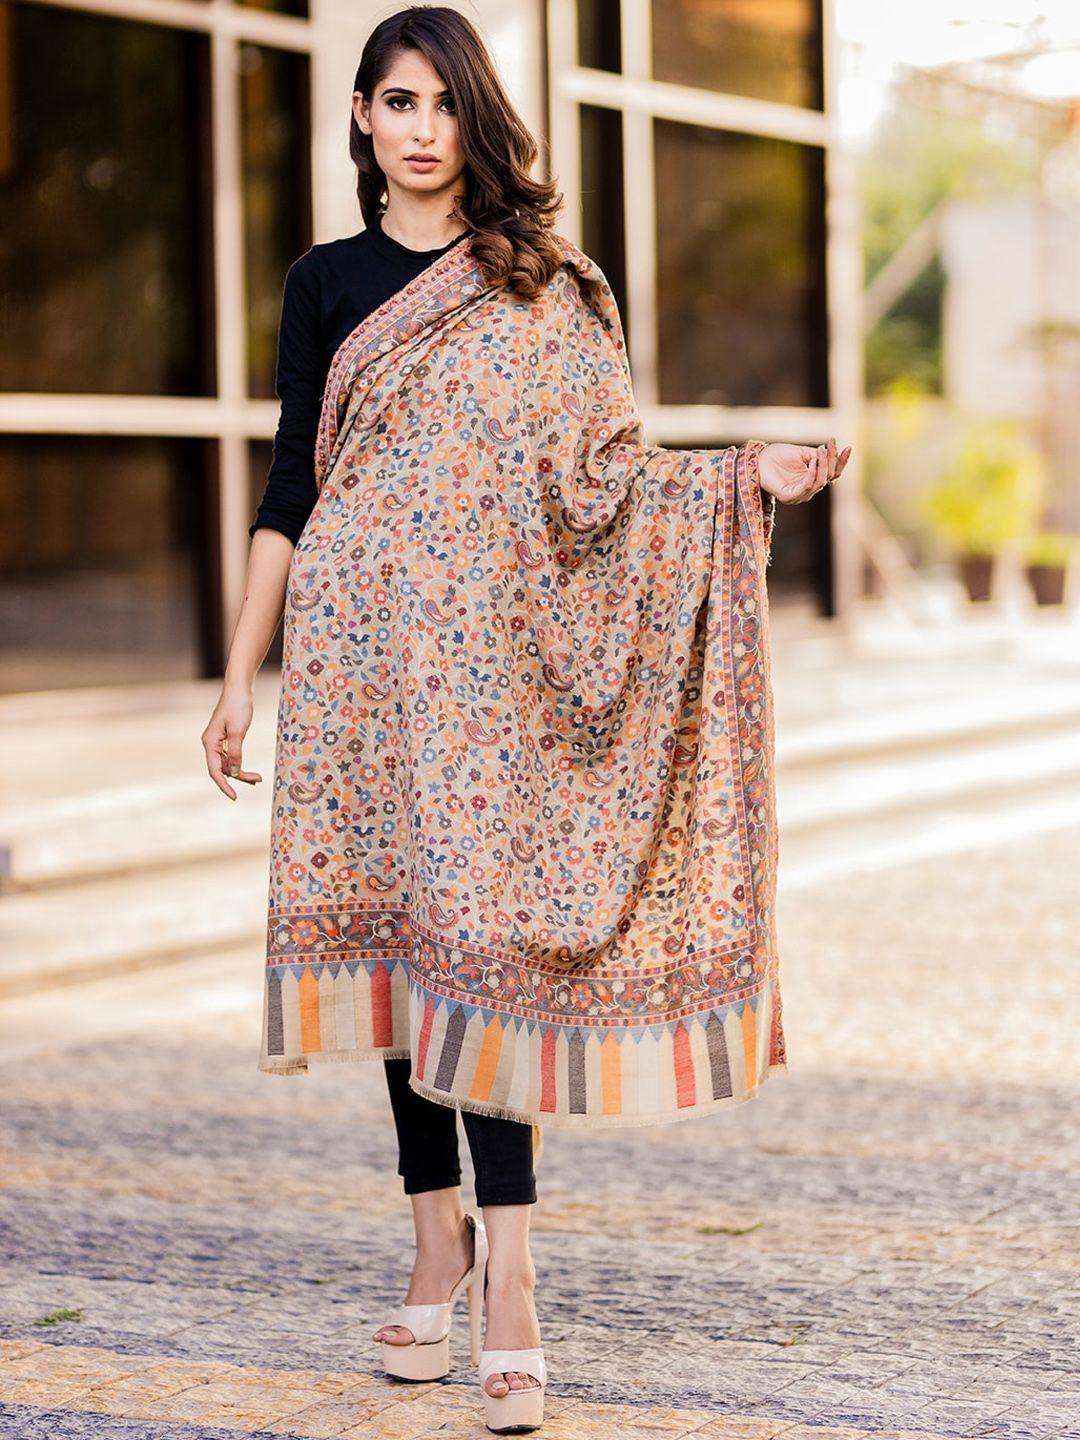 swi stylish paisley woven design shawl